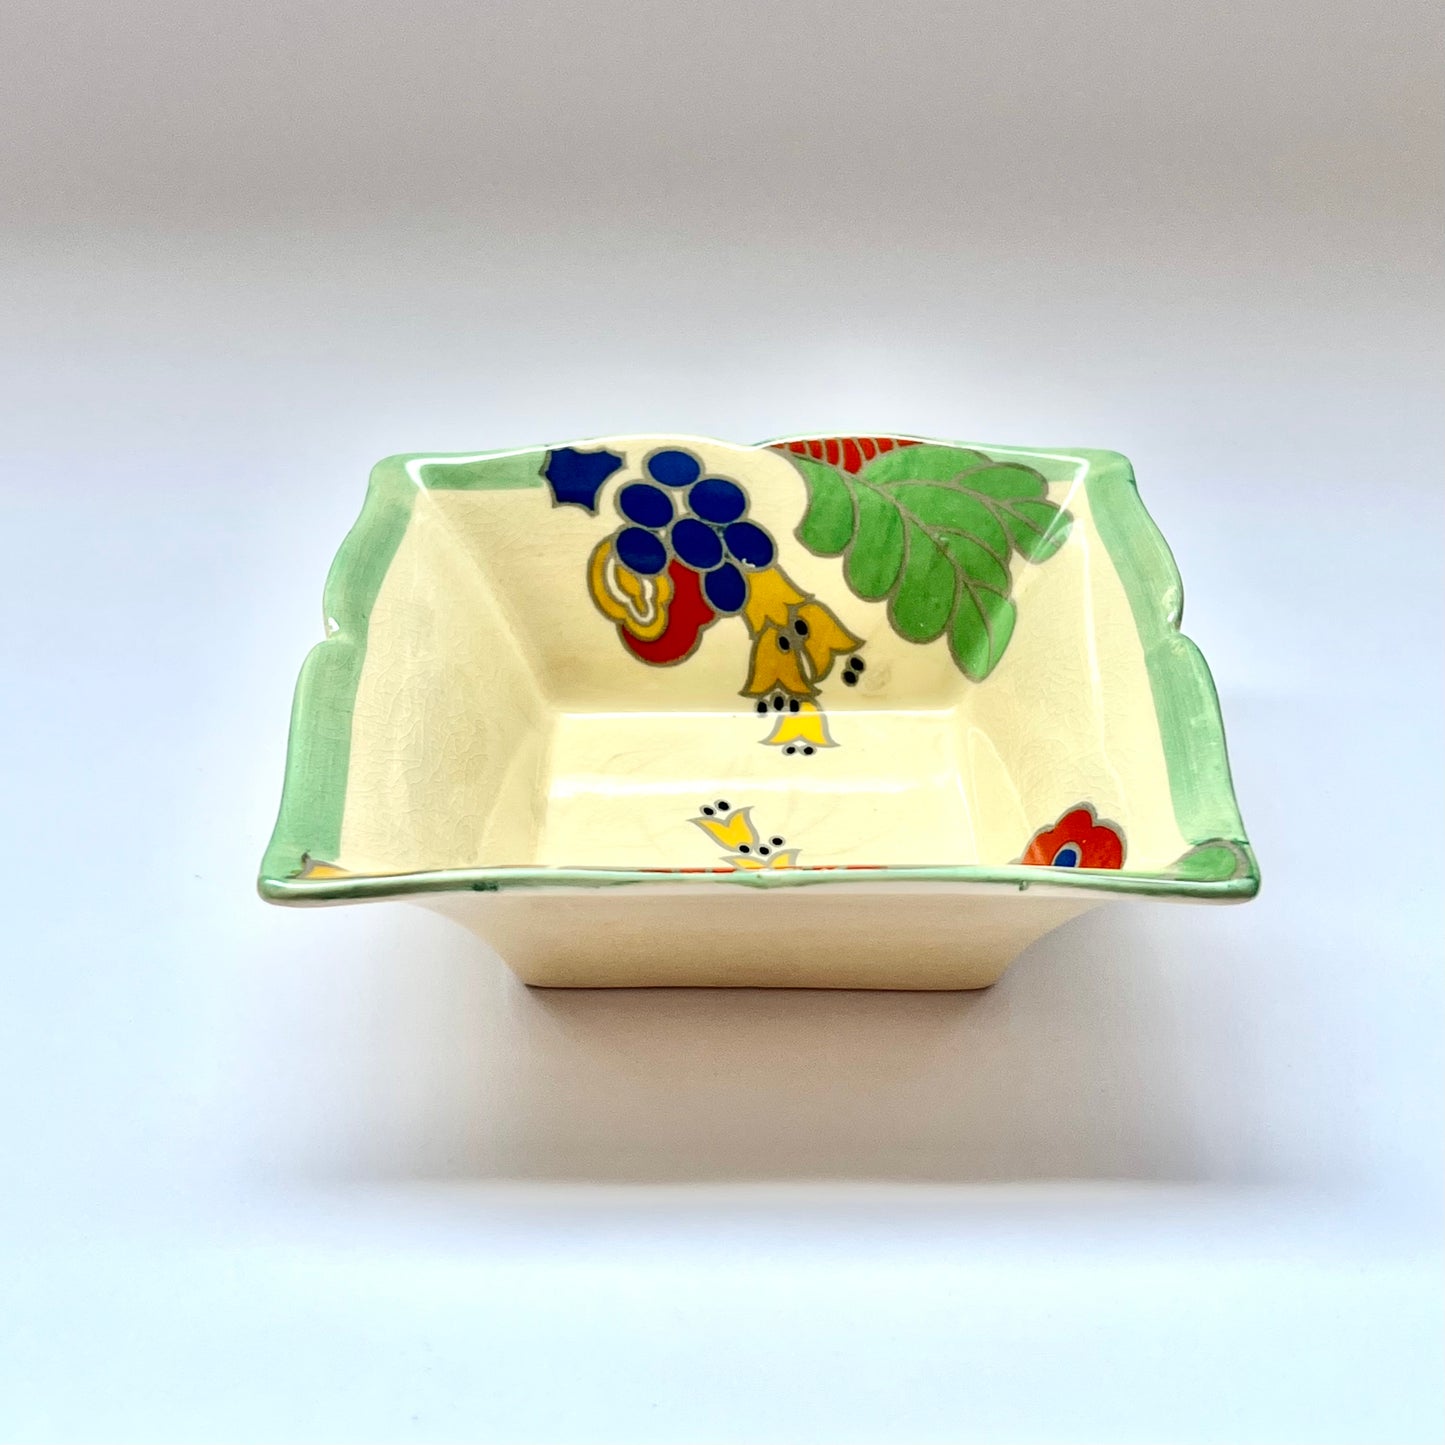 20 世纪 30 年代皇家道尔顿装饰艺术风格瓷器糖果盘 *原样* Caprice 图案